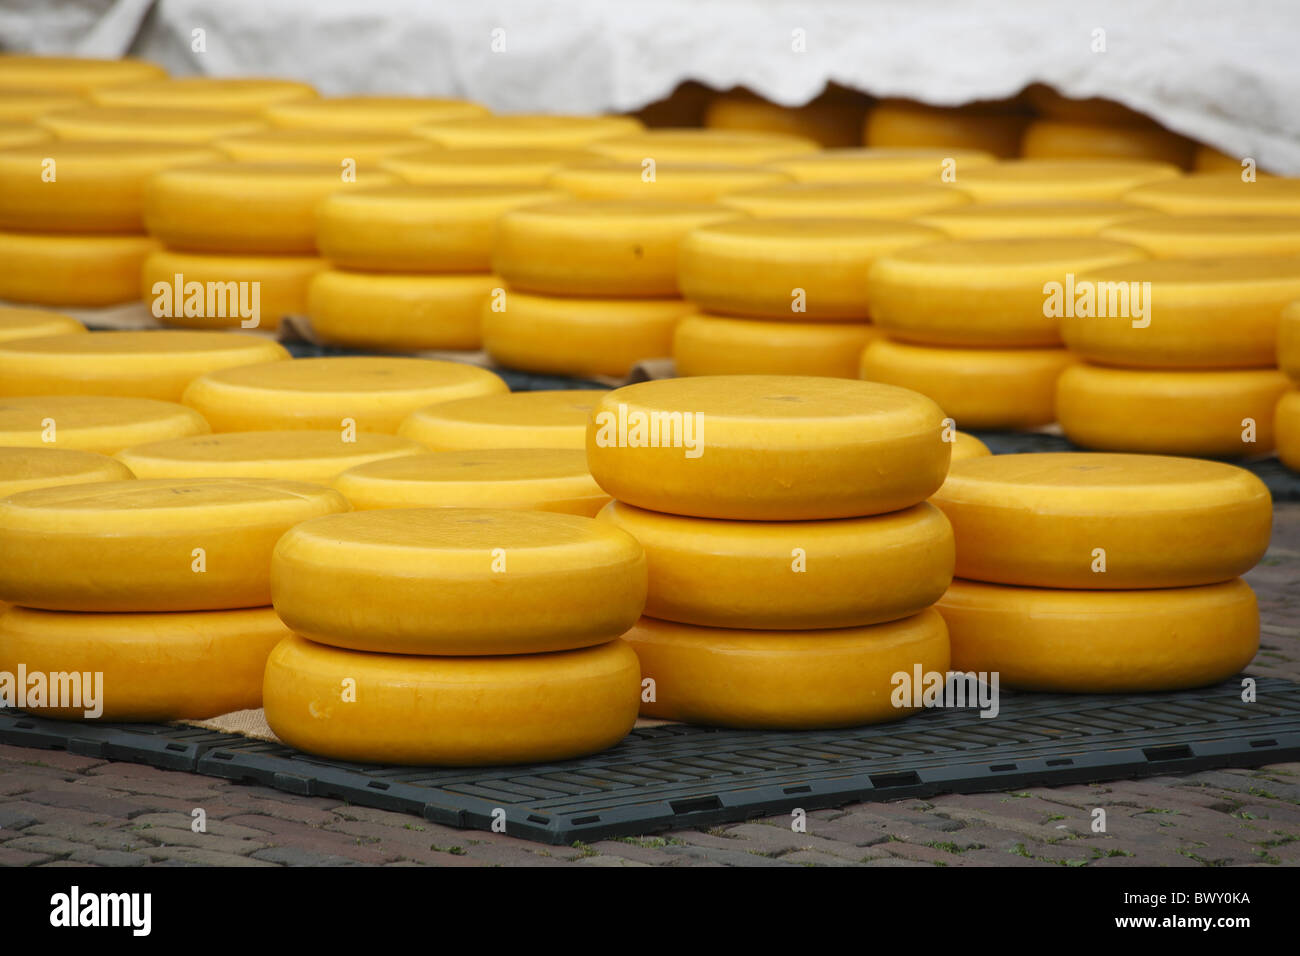 Marché aux fromages d'Alkmaar Pays-Bas Banque D'Images